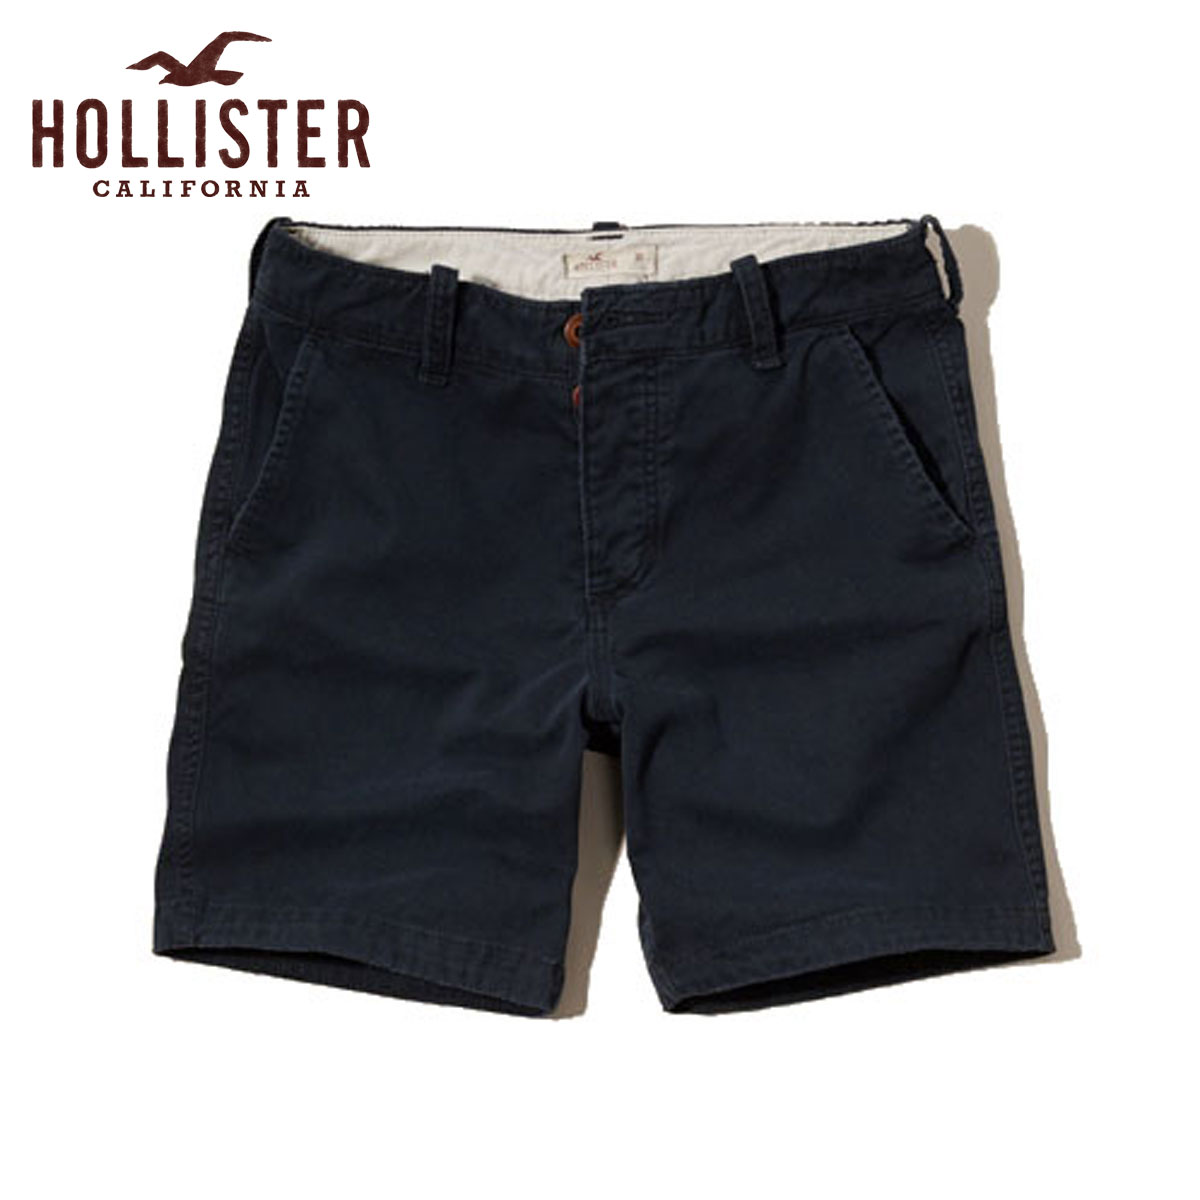  ホリスター ショートパンツ メンズ 正規品 HOLLISTER ボトムス Hollister Beach Prep Fit Shorts Inseam 7 Inches 328-281-0489-023 D15S25